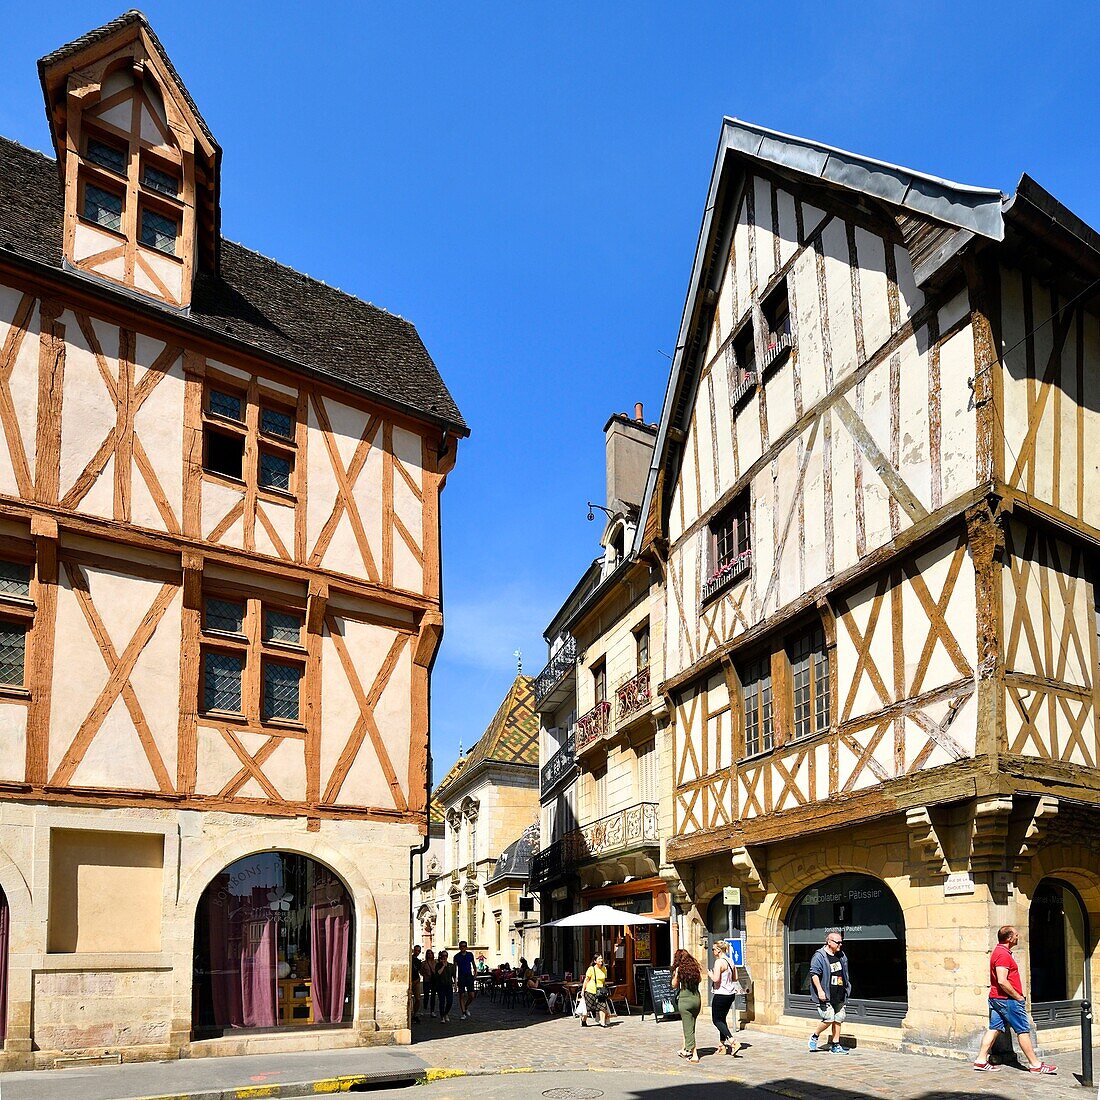 Frankreich,Cote d'Or,Dijon,von der UNESCO zum Weltkulturerbe erklärtes Gebiet,rue de la Chouette und rue de la Verrerie,typische Fachwerkhäuser